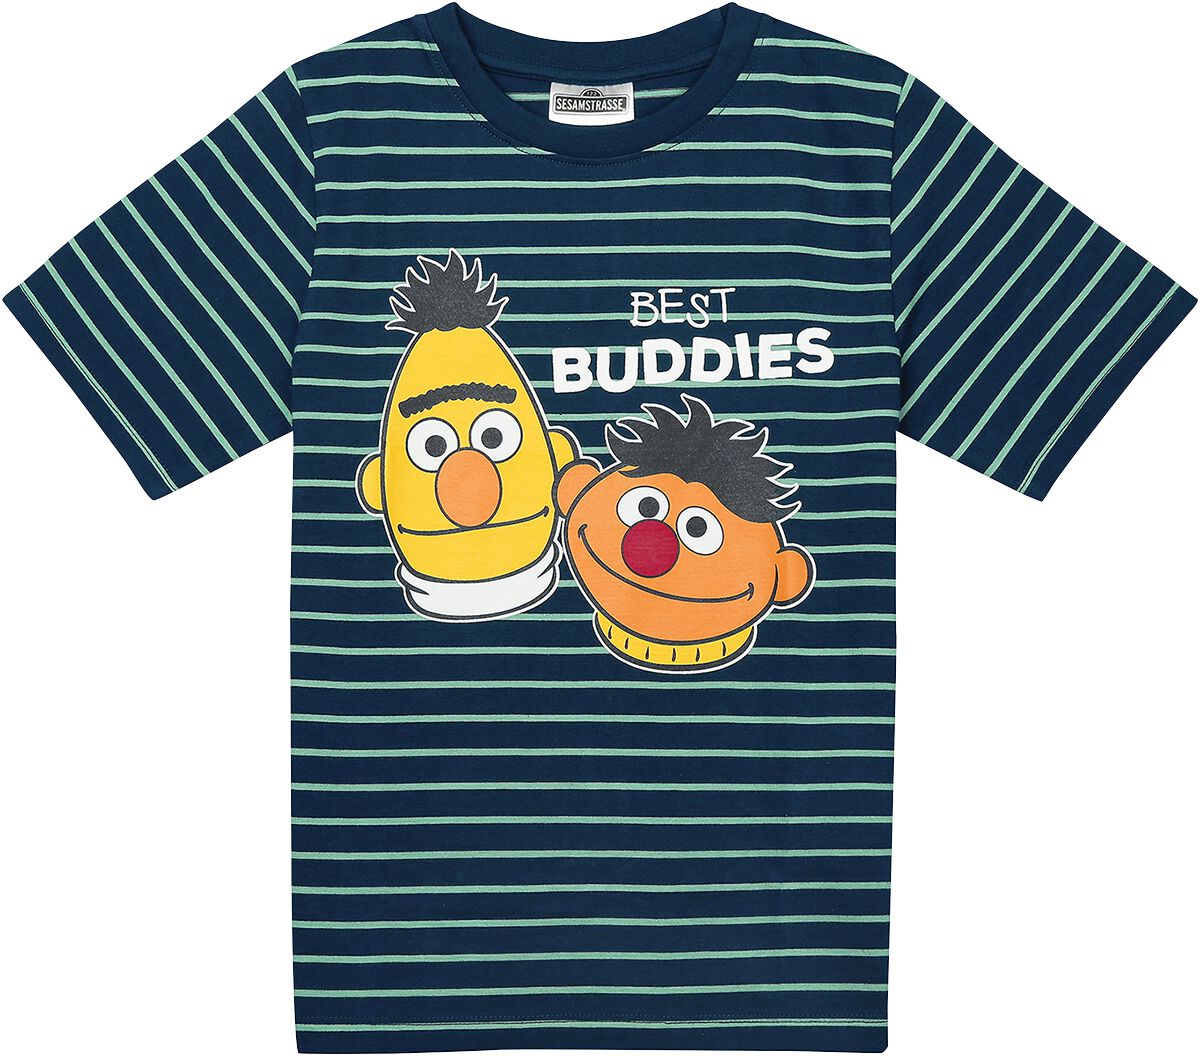 Sesamstraße T-Shirt - Kids - Ernie und Bert - Best Buddies - 116 bis 140 - Größe 128 - blau/grün  - EMP exklusives Merchandise!